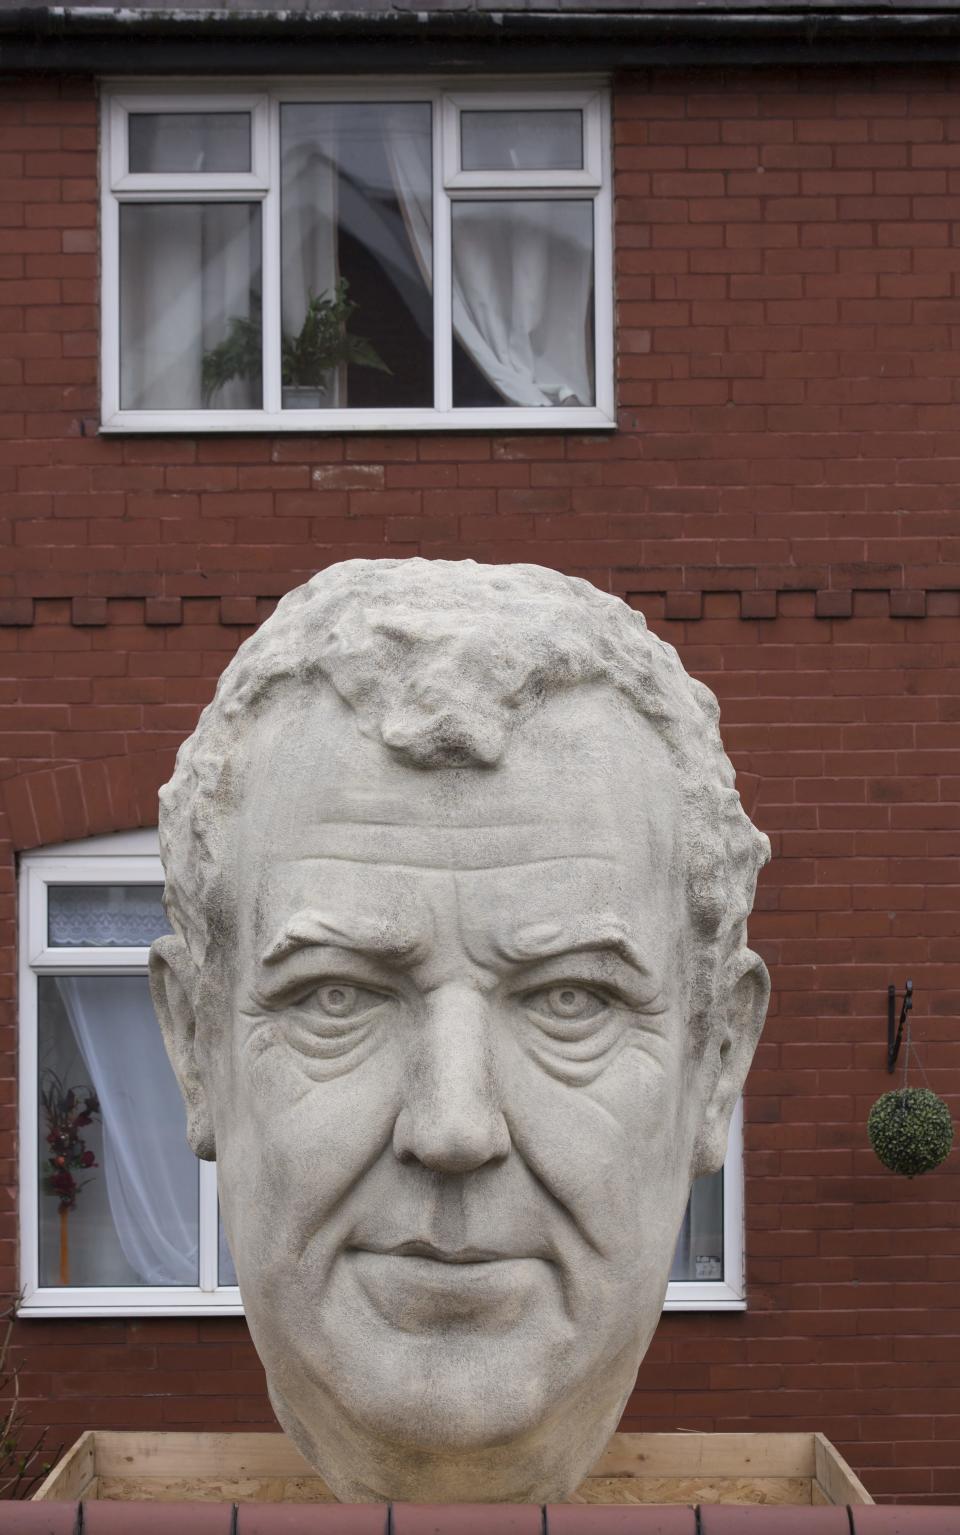 'A tacky monstrosity': Giant sculpture of Jeremy Clarkson's head appears in garden 